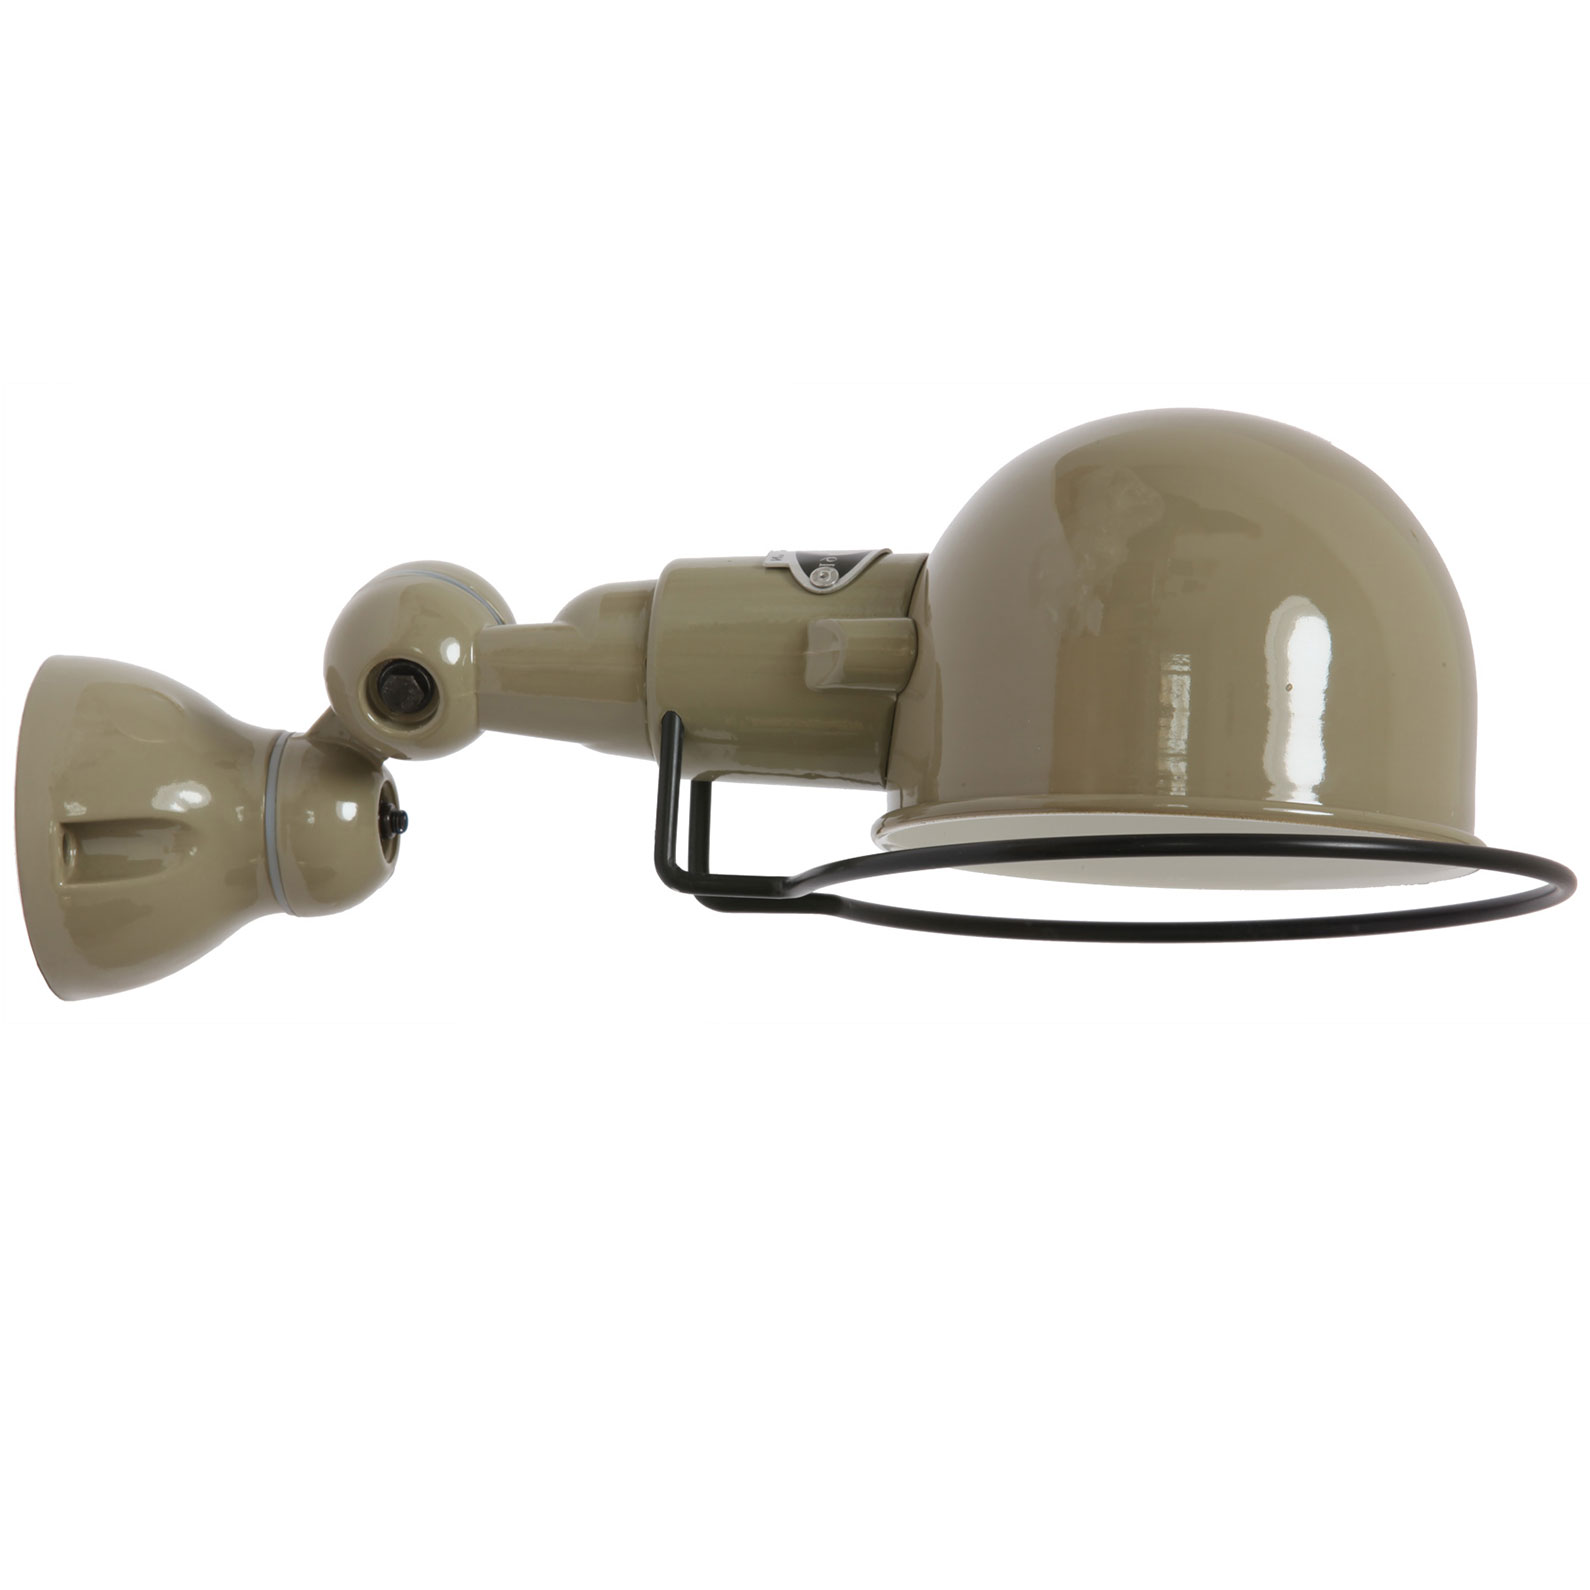 Kleine Gelenkwandlampe SIGNAL mit Halbkugel-Reflektor: Die Gelenk-Wandlampe in RAL 7002 Olivgrau